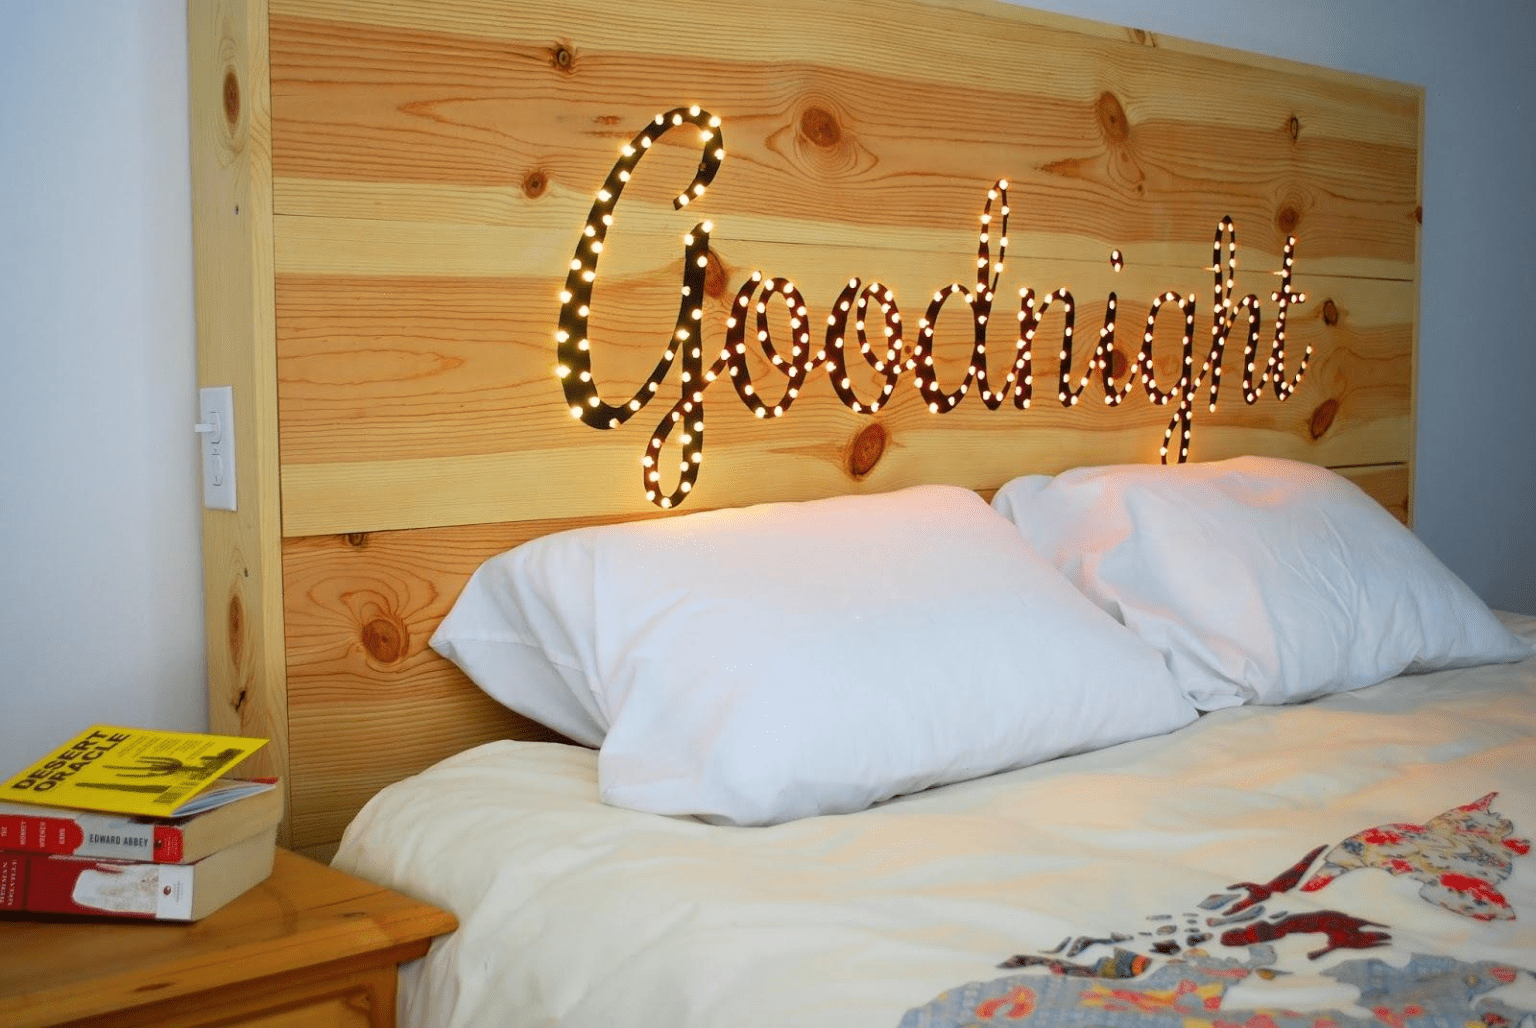 Ý tưởng thiết kế phòng ngủ độc đáo từ việc decor tường đầu giường - Ảnh 5.